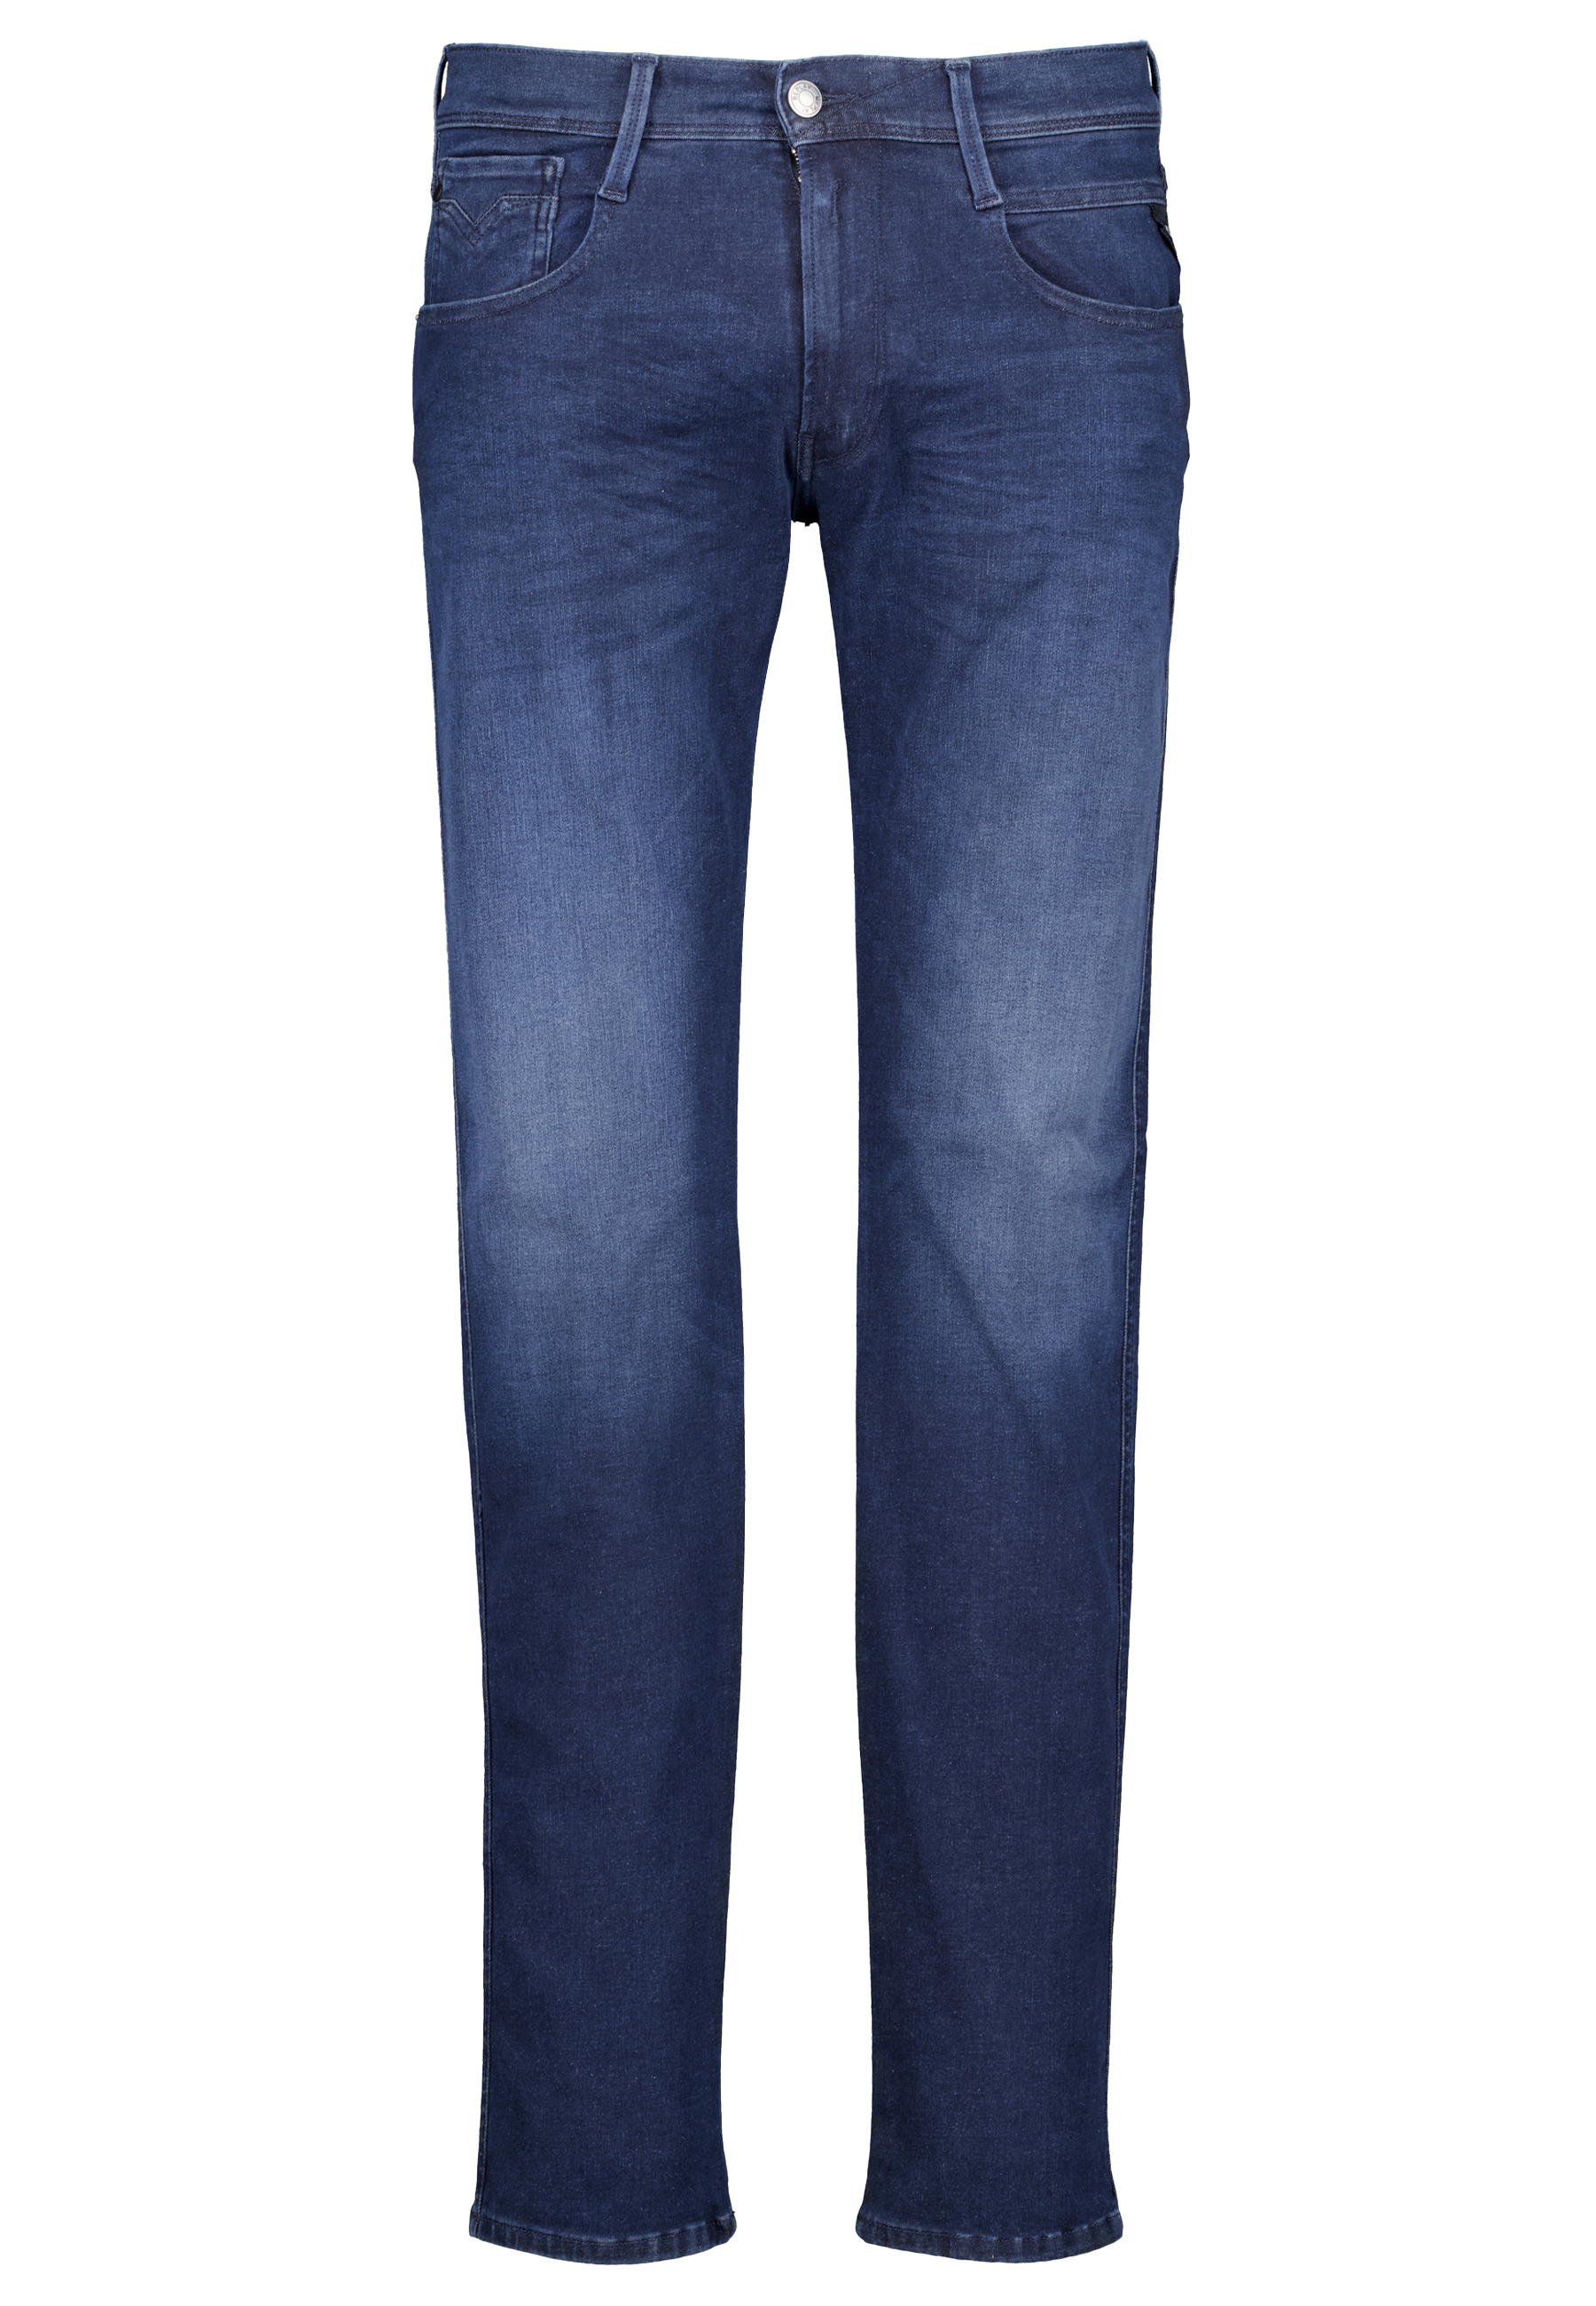 Replay jeans blauw Heren maat 30/34